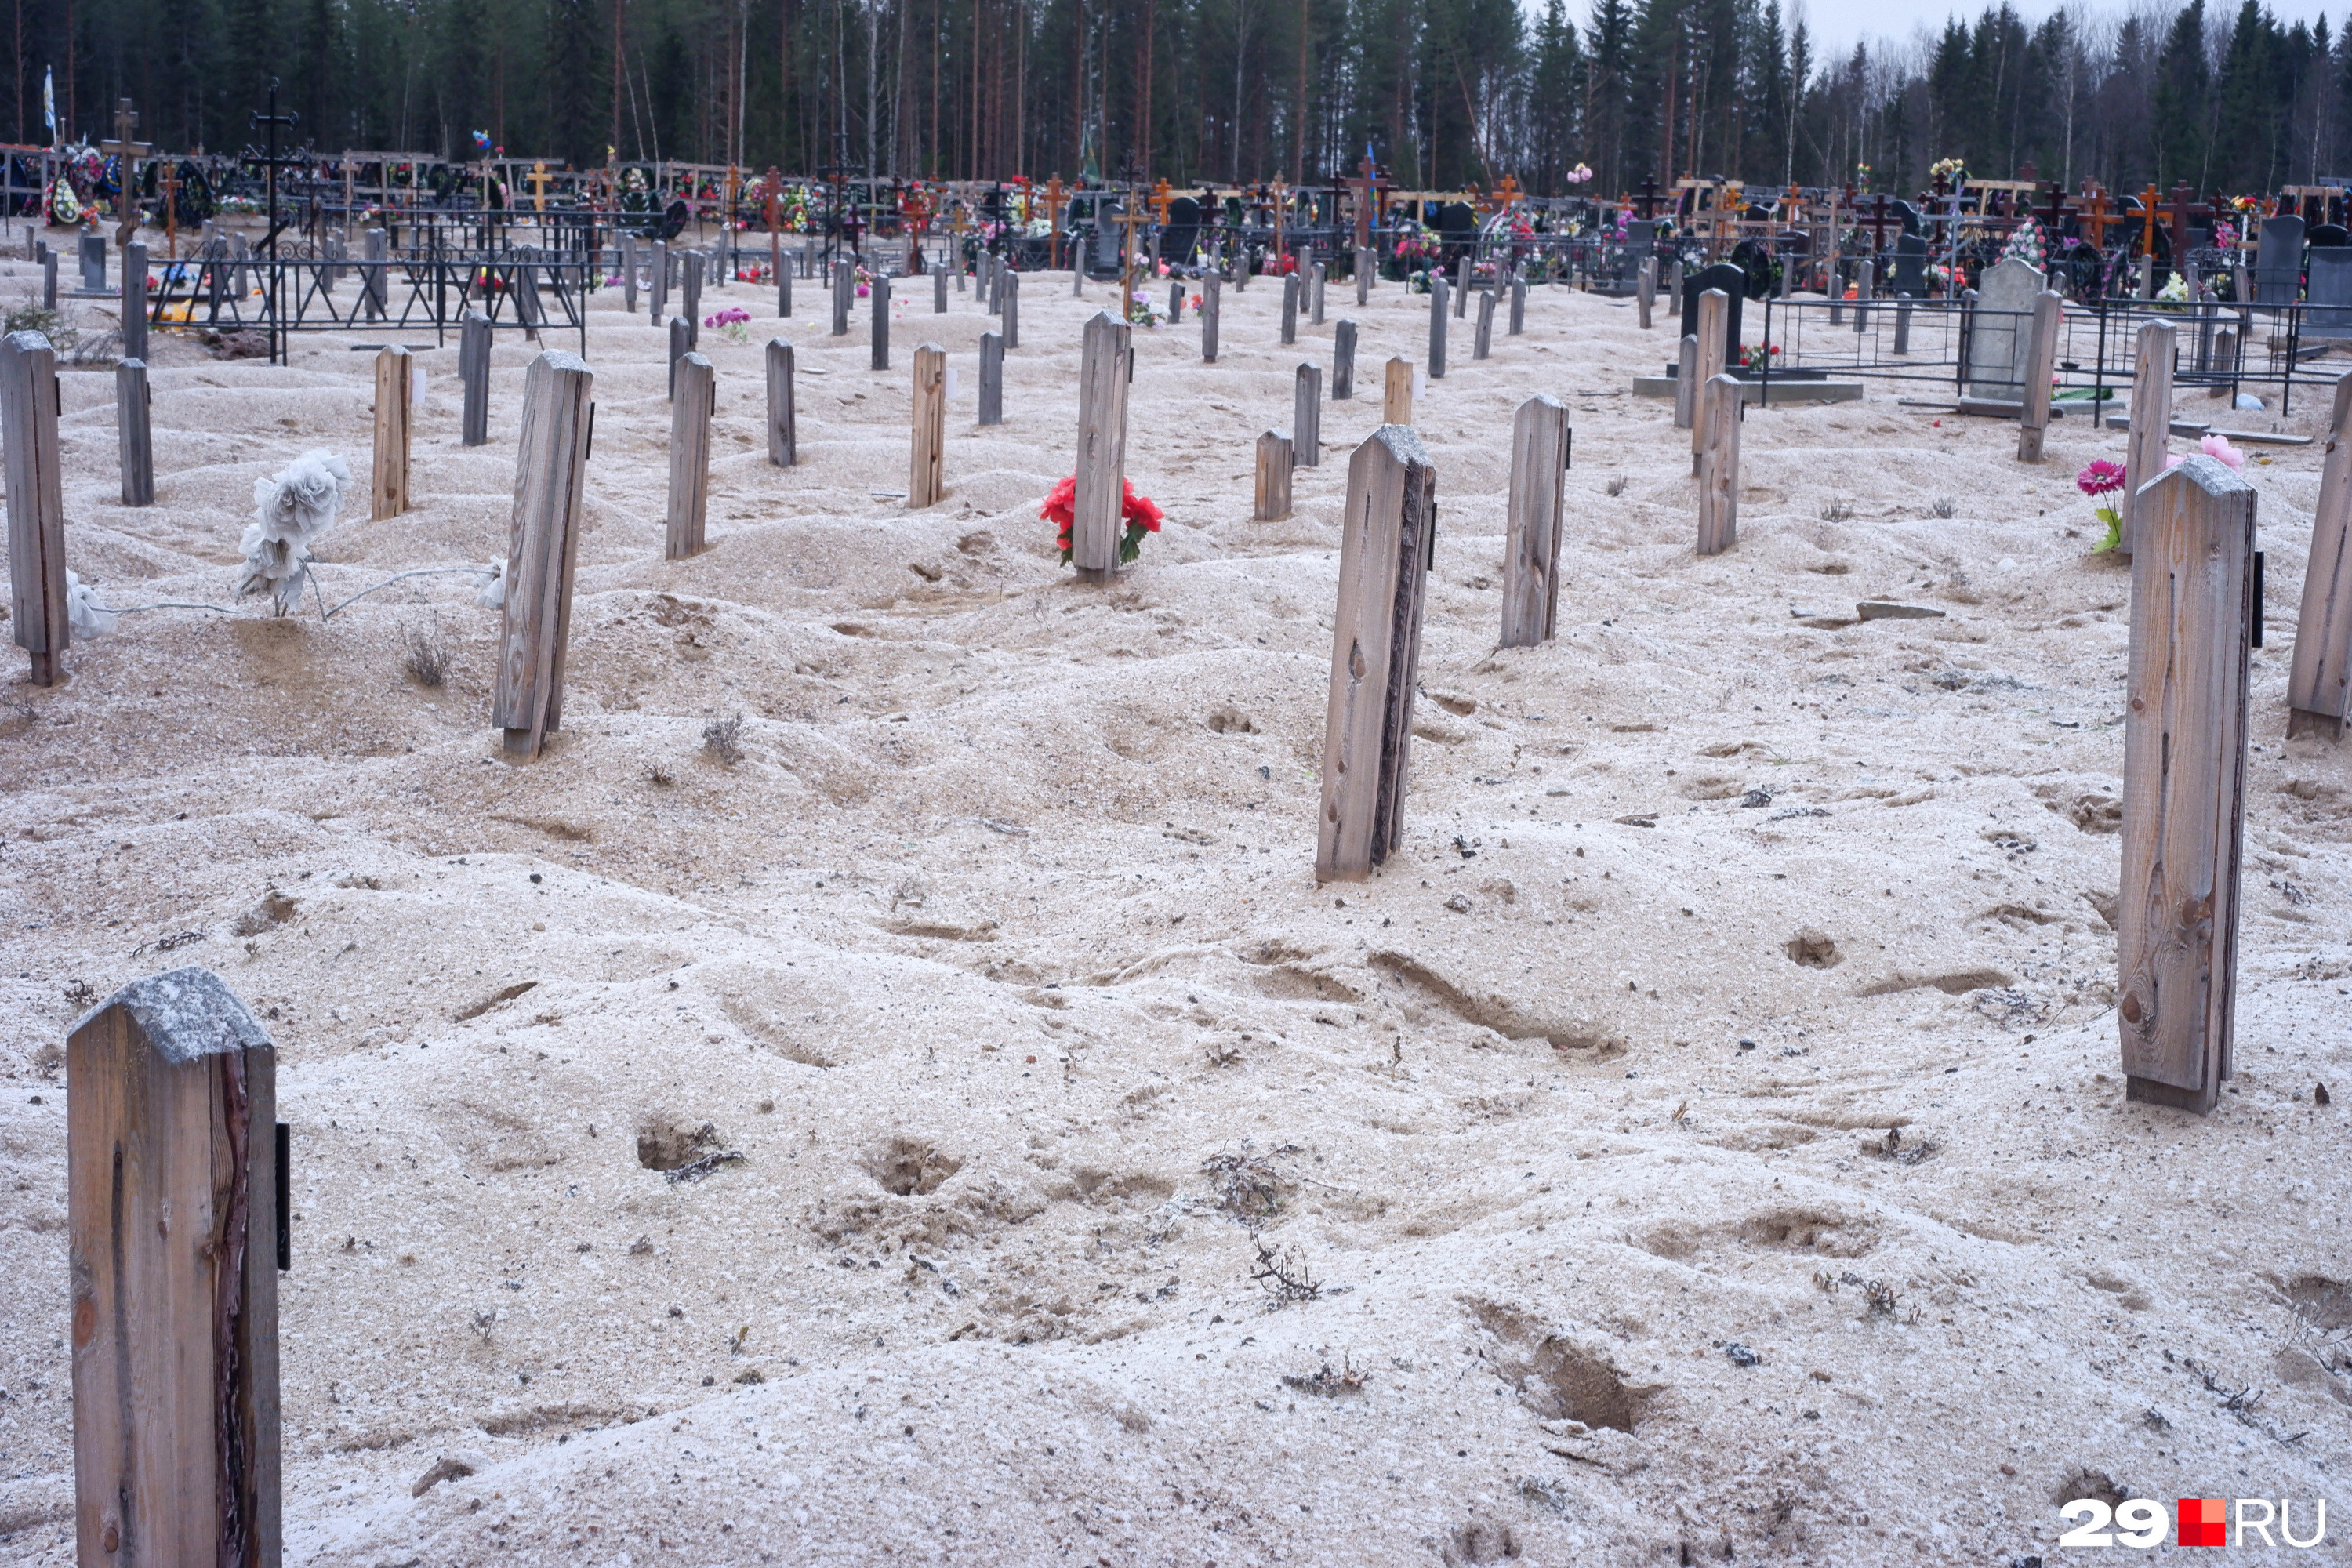 Сектор кладбища с невостребованными телами. На заднем плане видны обычные участки